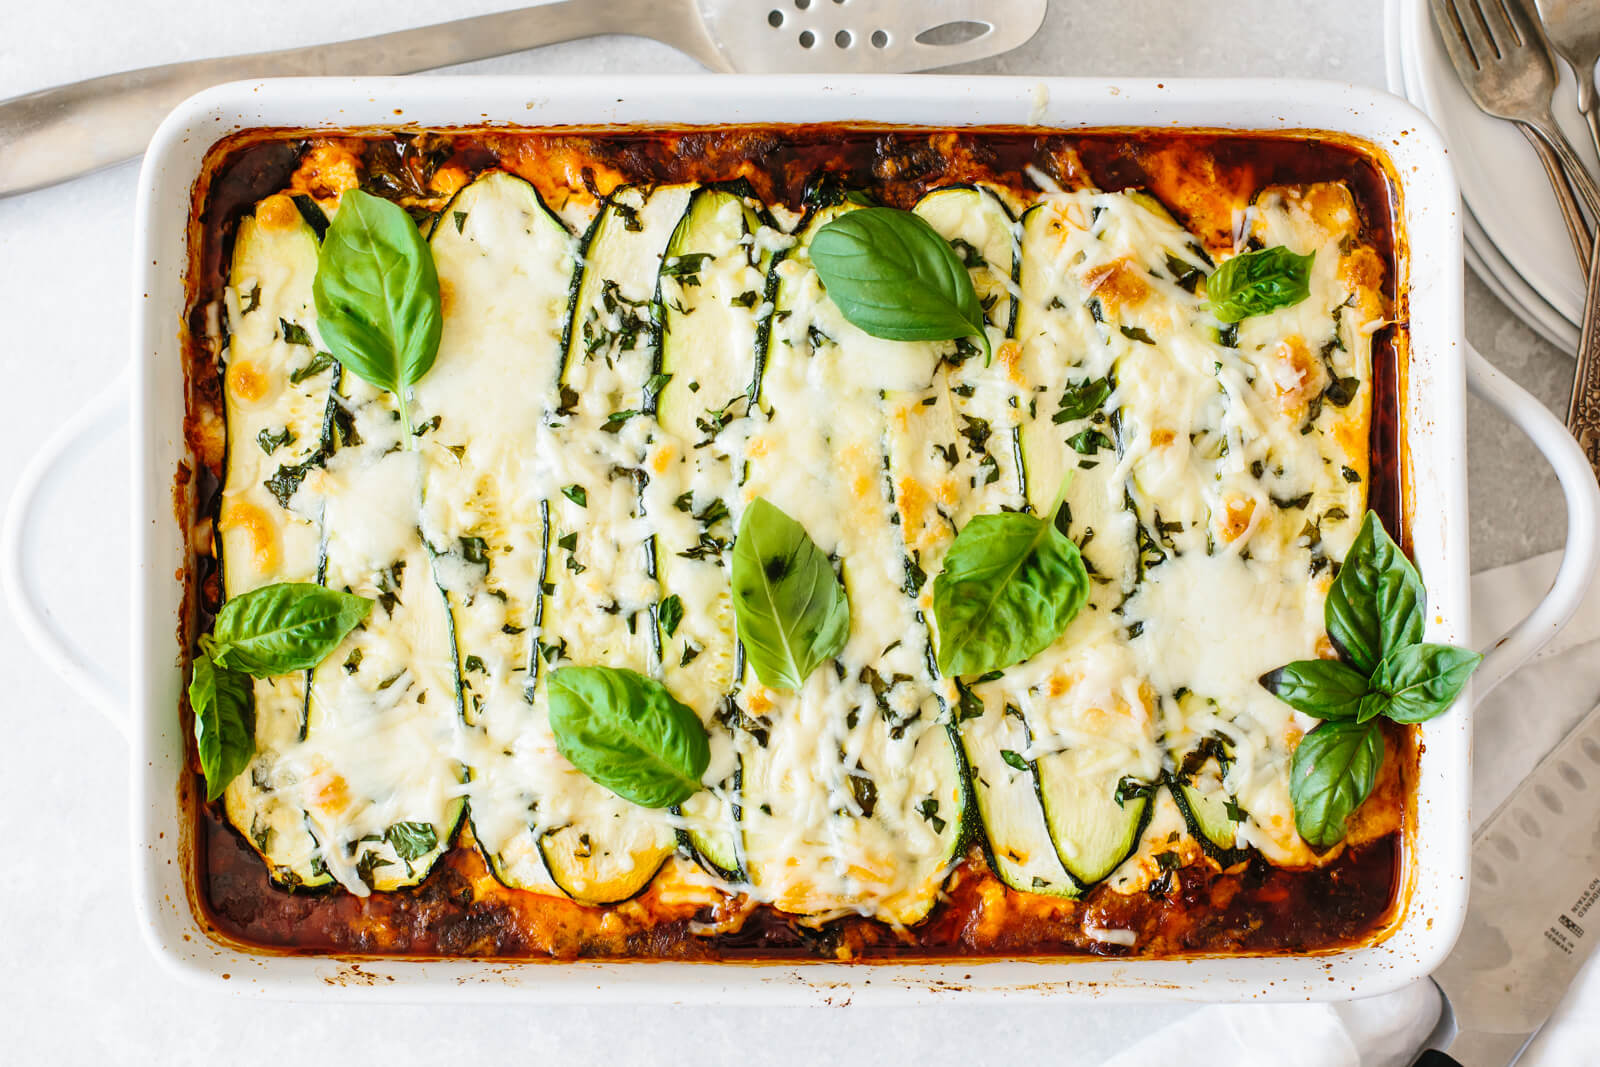 Zucchini lasagna in a baking dish